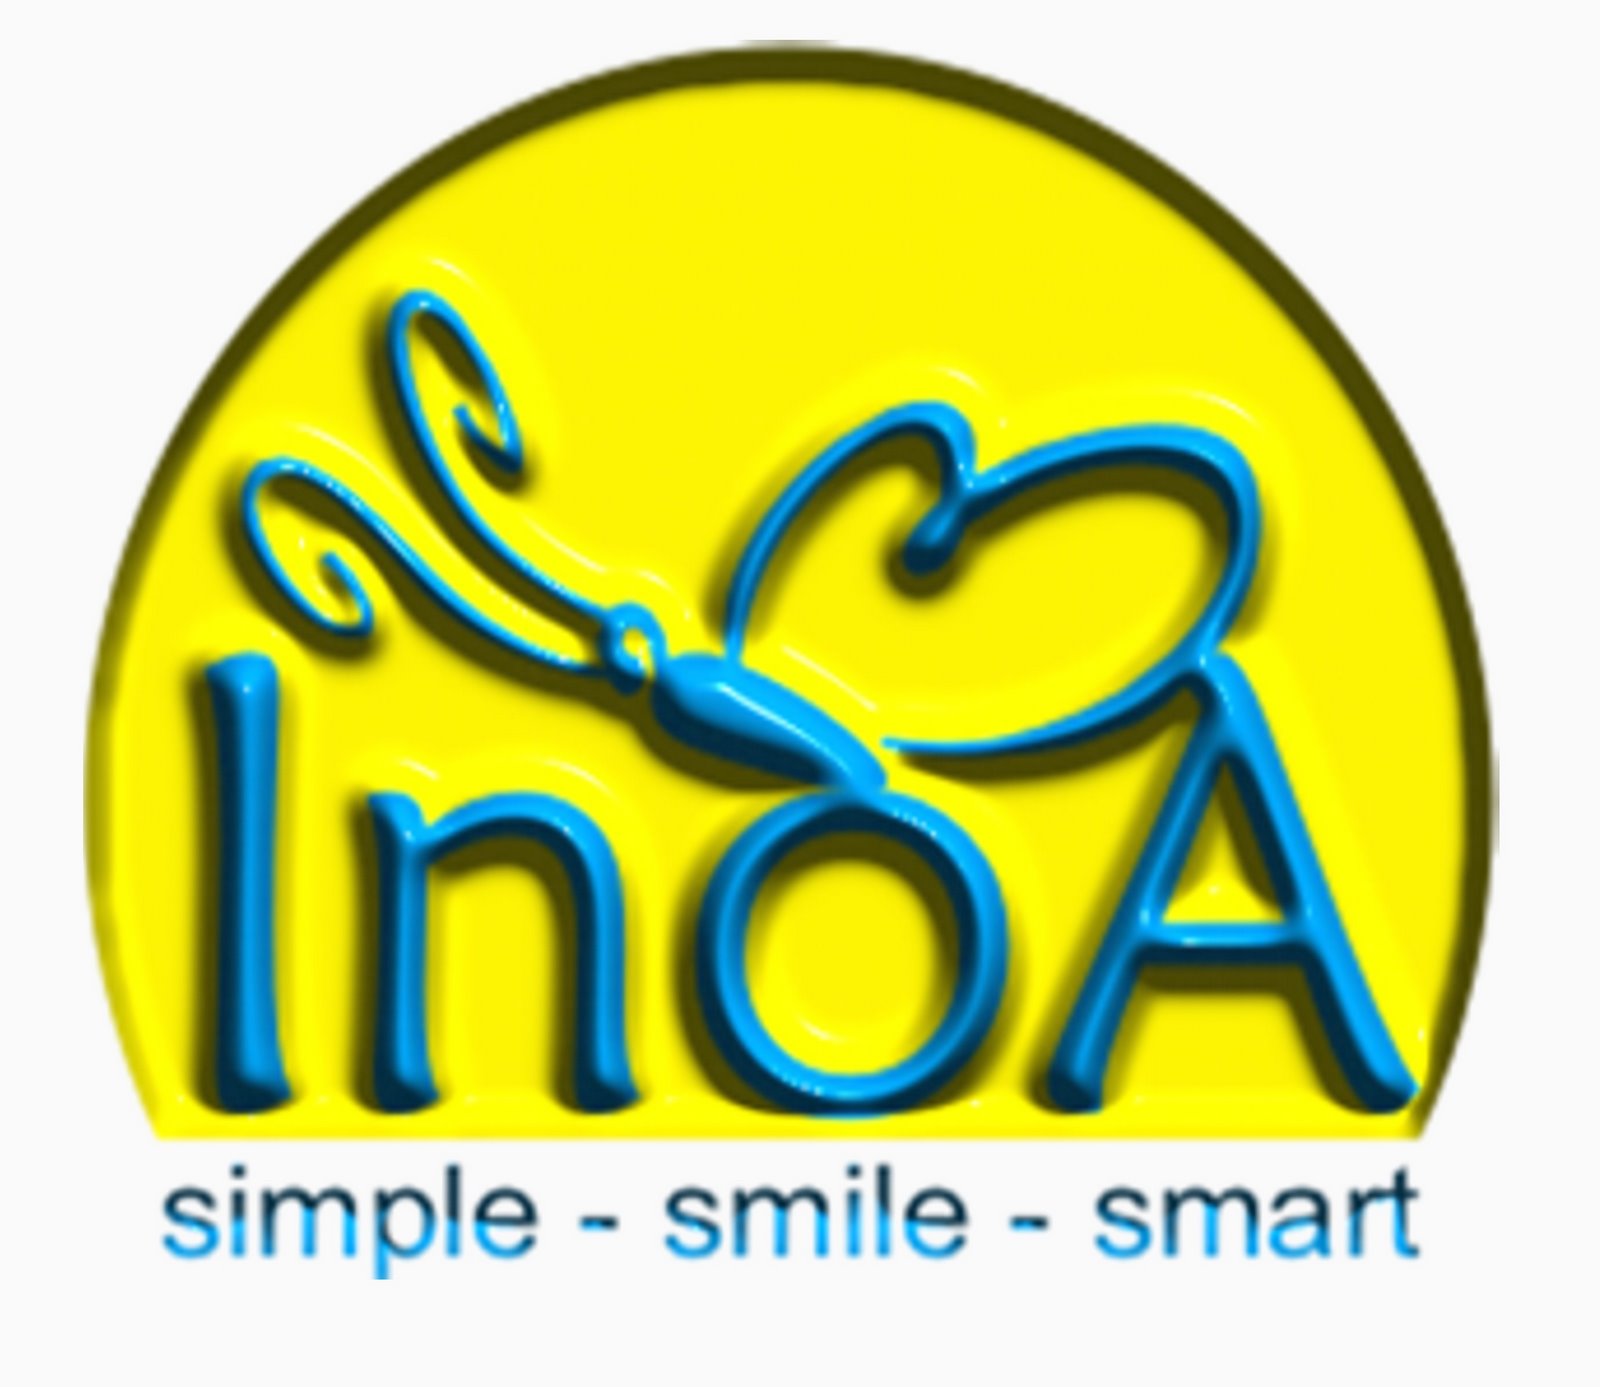 inoa : in the name of allah